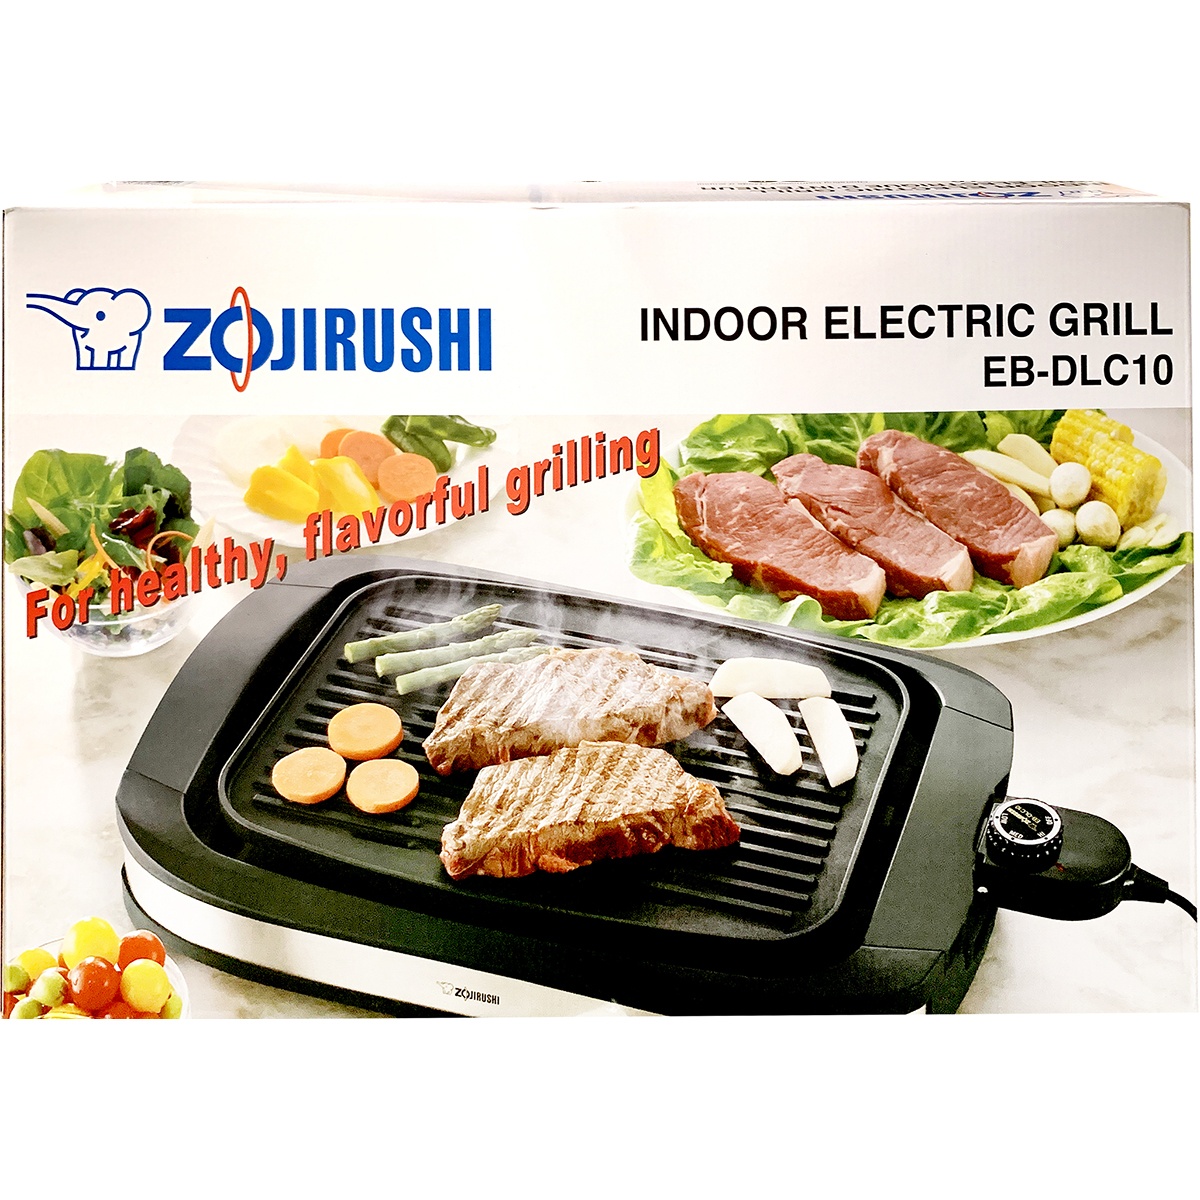 Zojirushi Z/S Indoor Electric Grill Eb-Dlc10-Xt 1 ct